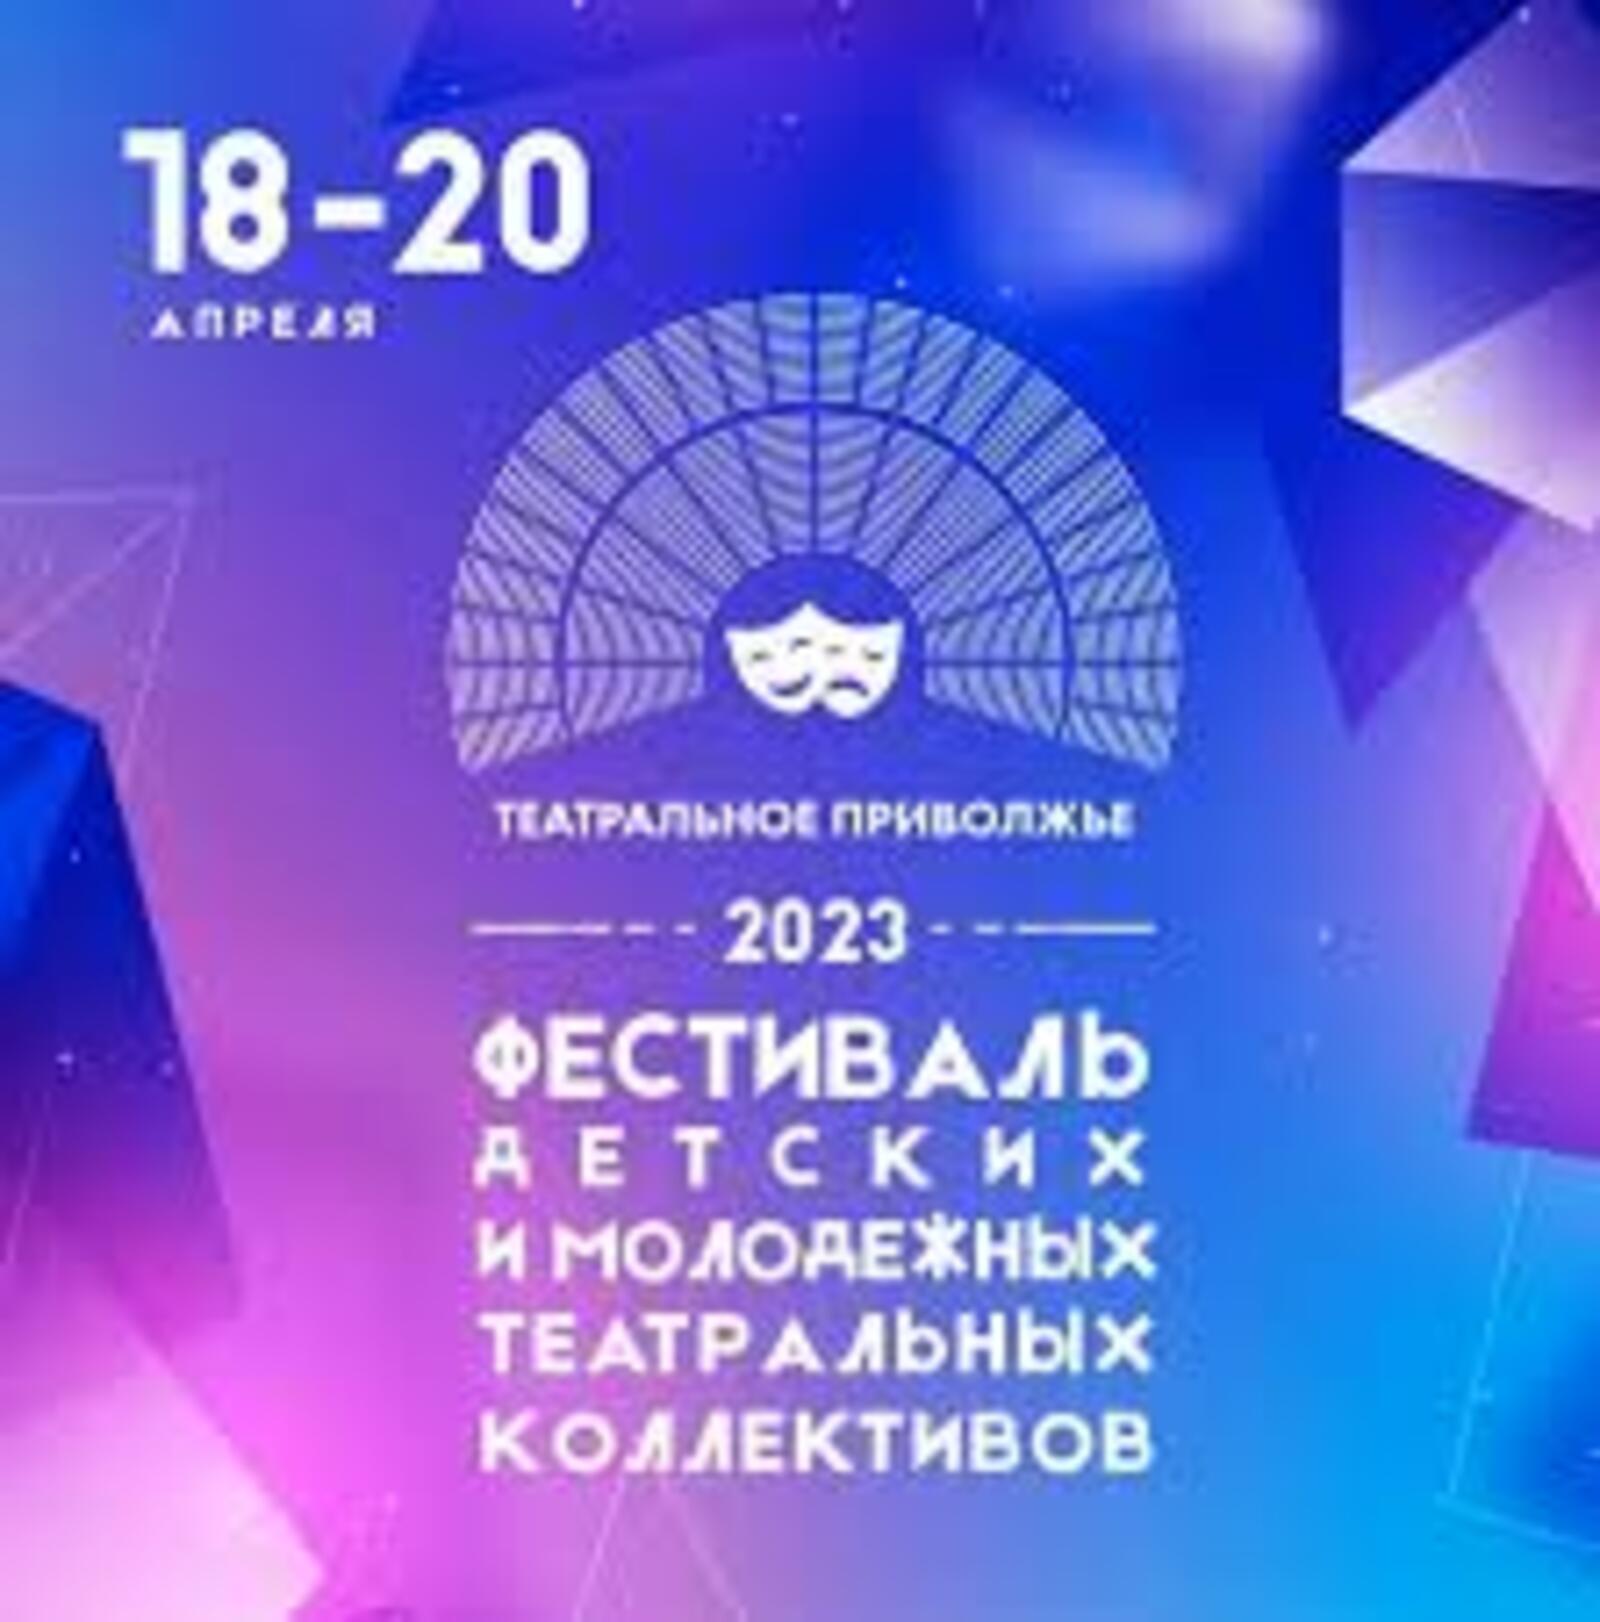 Четвёртый фестиваль "Театральное Приволжье - 2023" в цифрах